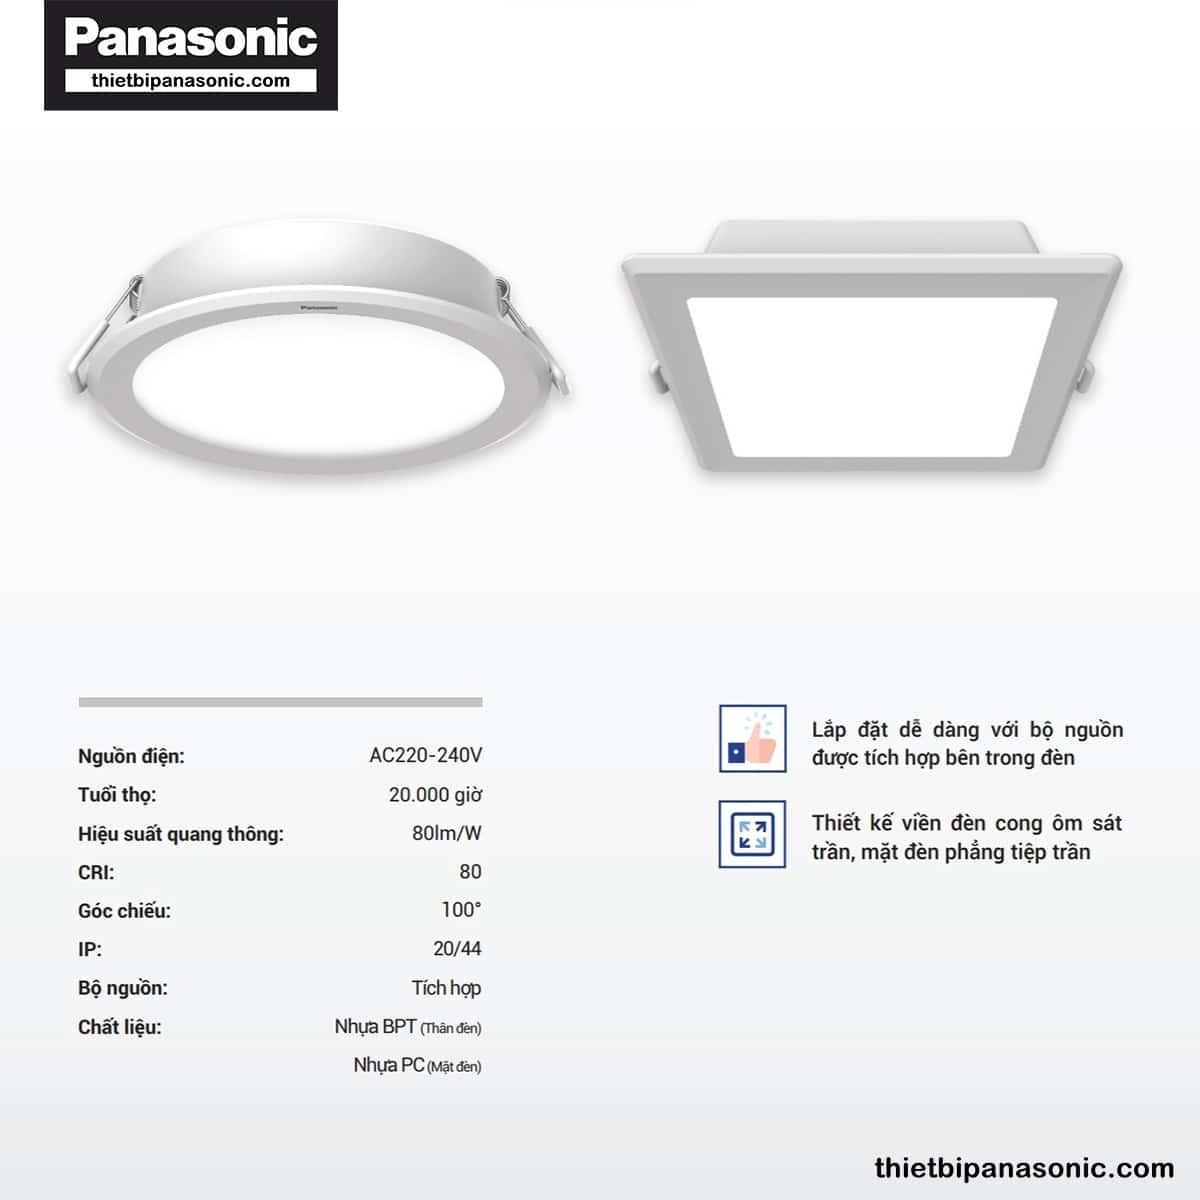 Đặc điểm nổi bật của Đèn âm trần DN 2G Panasonic 9W đơn sắc tròn | lỗ khoét Ø90mm, Ø110mm